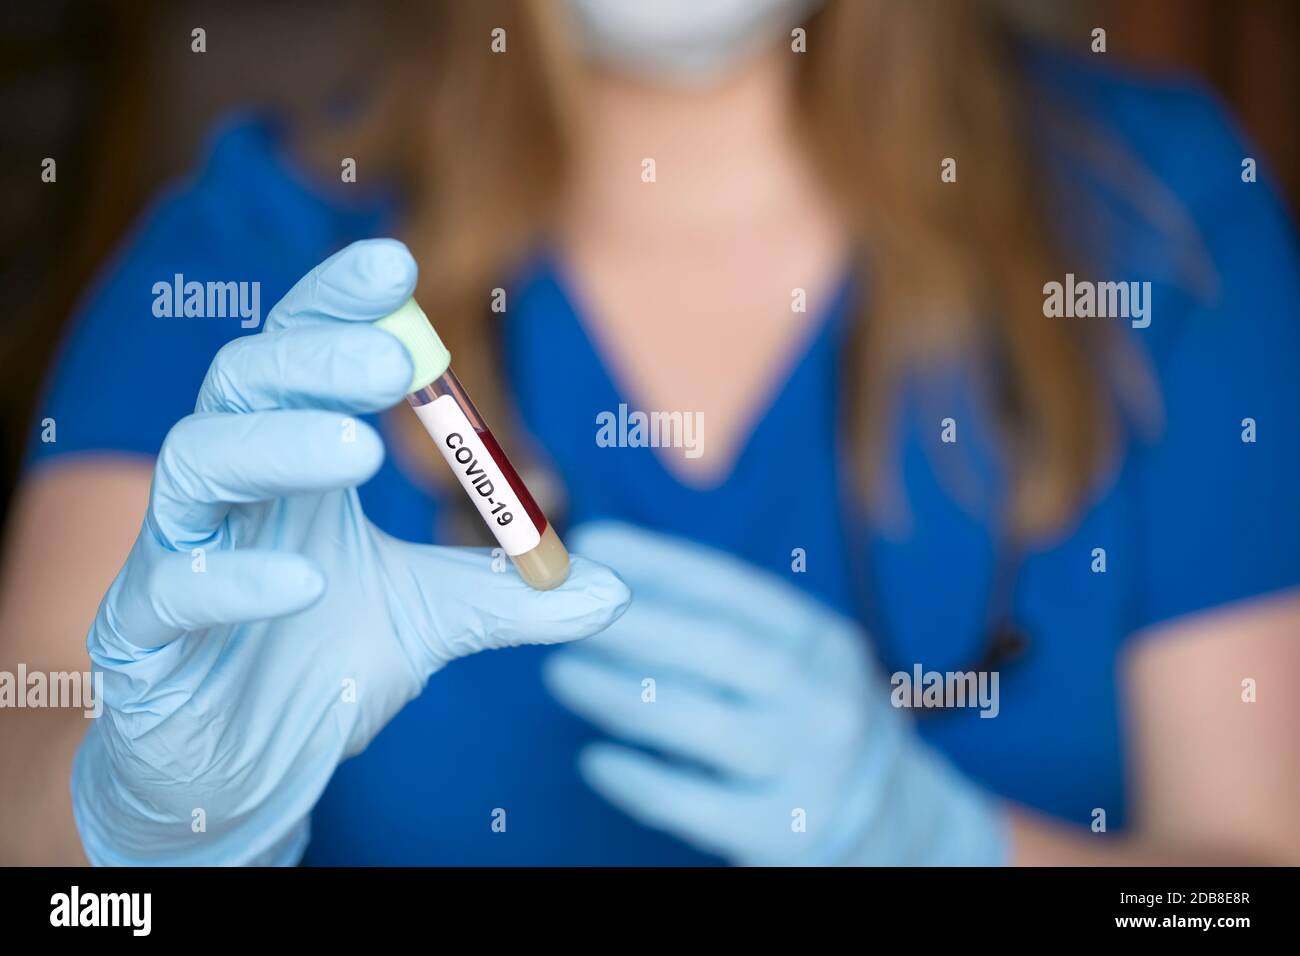 provetta in mano al tecnico di laboratorio con campione di coronavirus covid-19, concetto mortale di pandemia globale Foto Stock